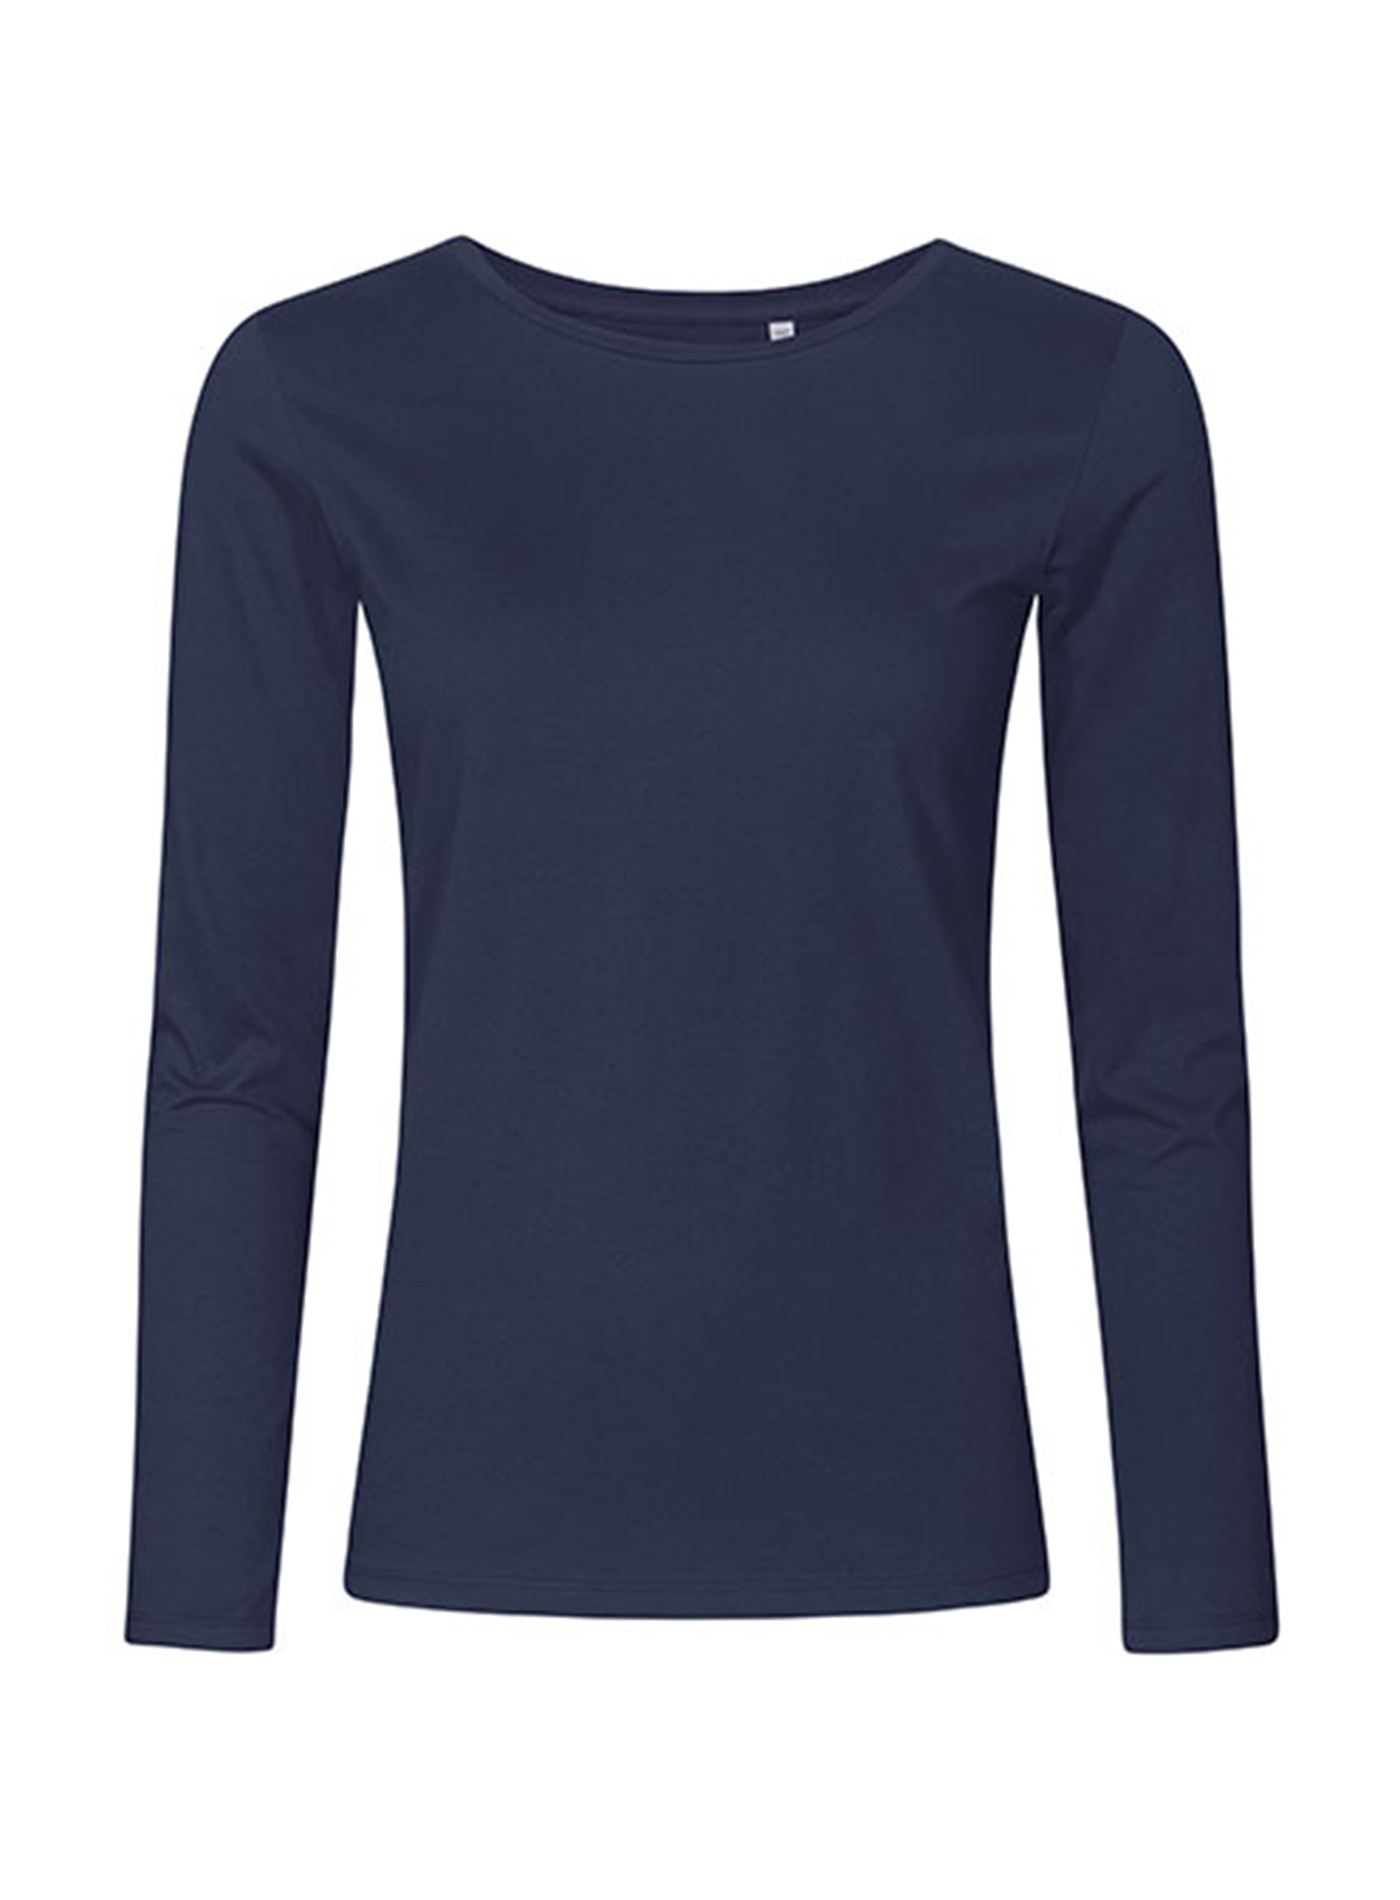 Dámské tričko s dlouhým rukávem s kulatým výstřihem Promodoro - Námořnická modrá M